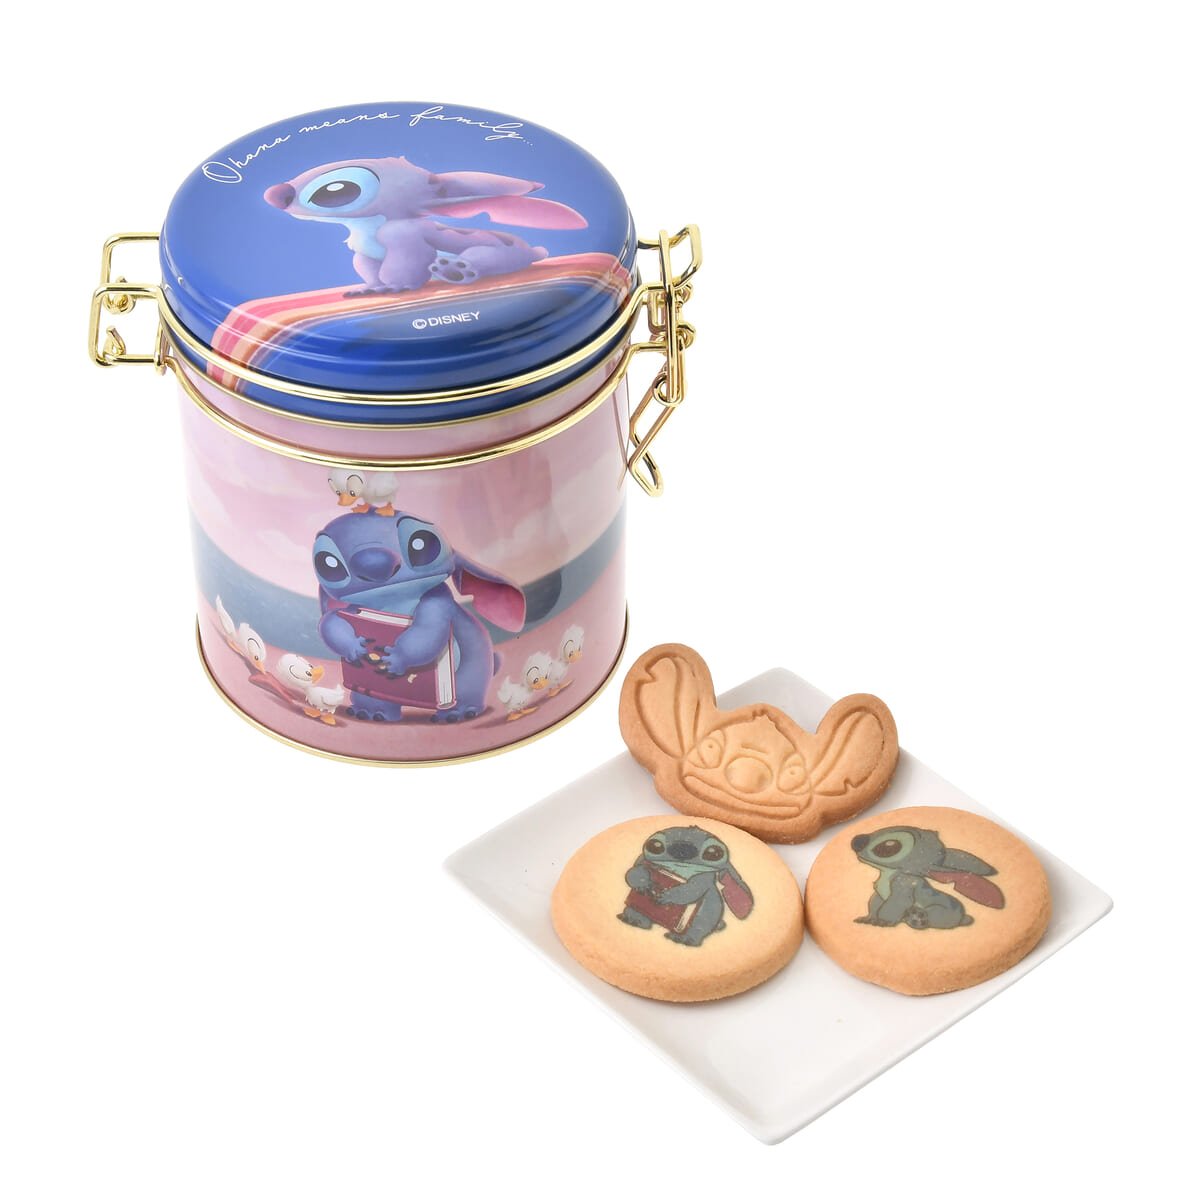 スティッチ クッキー キャニスター缶入り Disney Stitch Day Collection